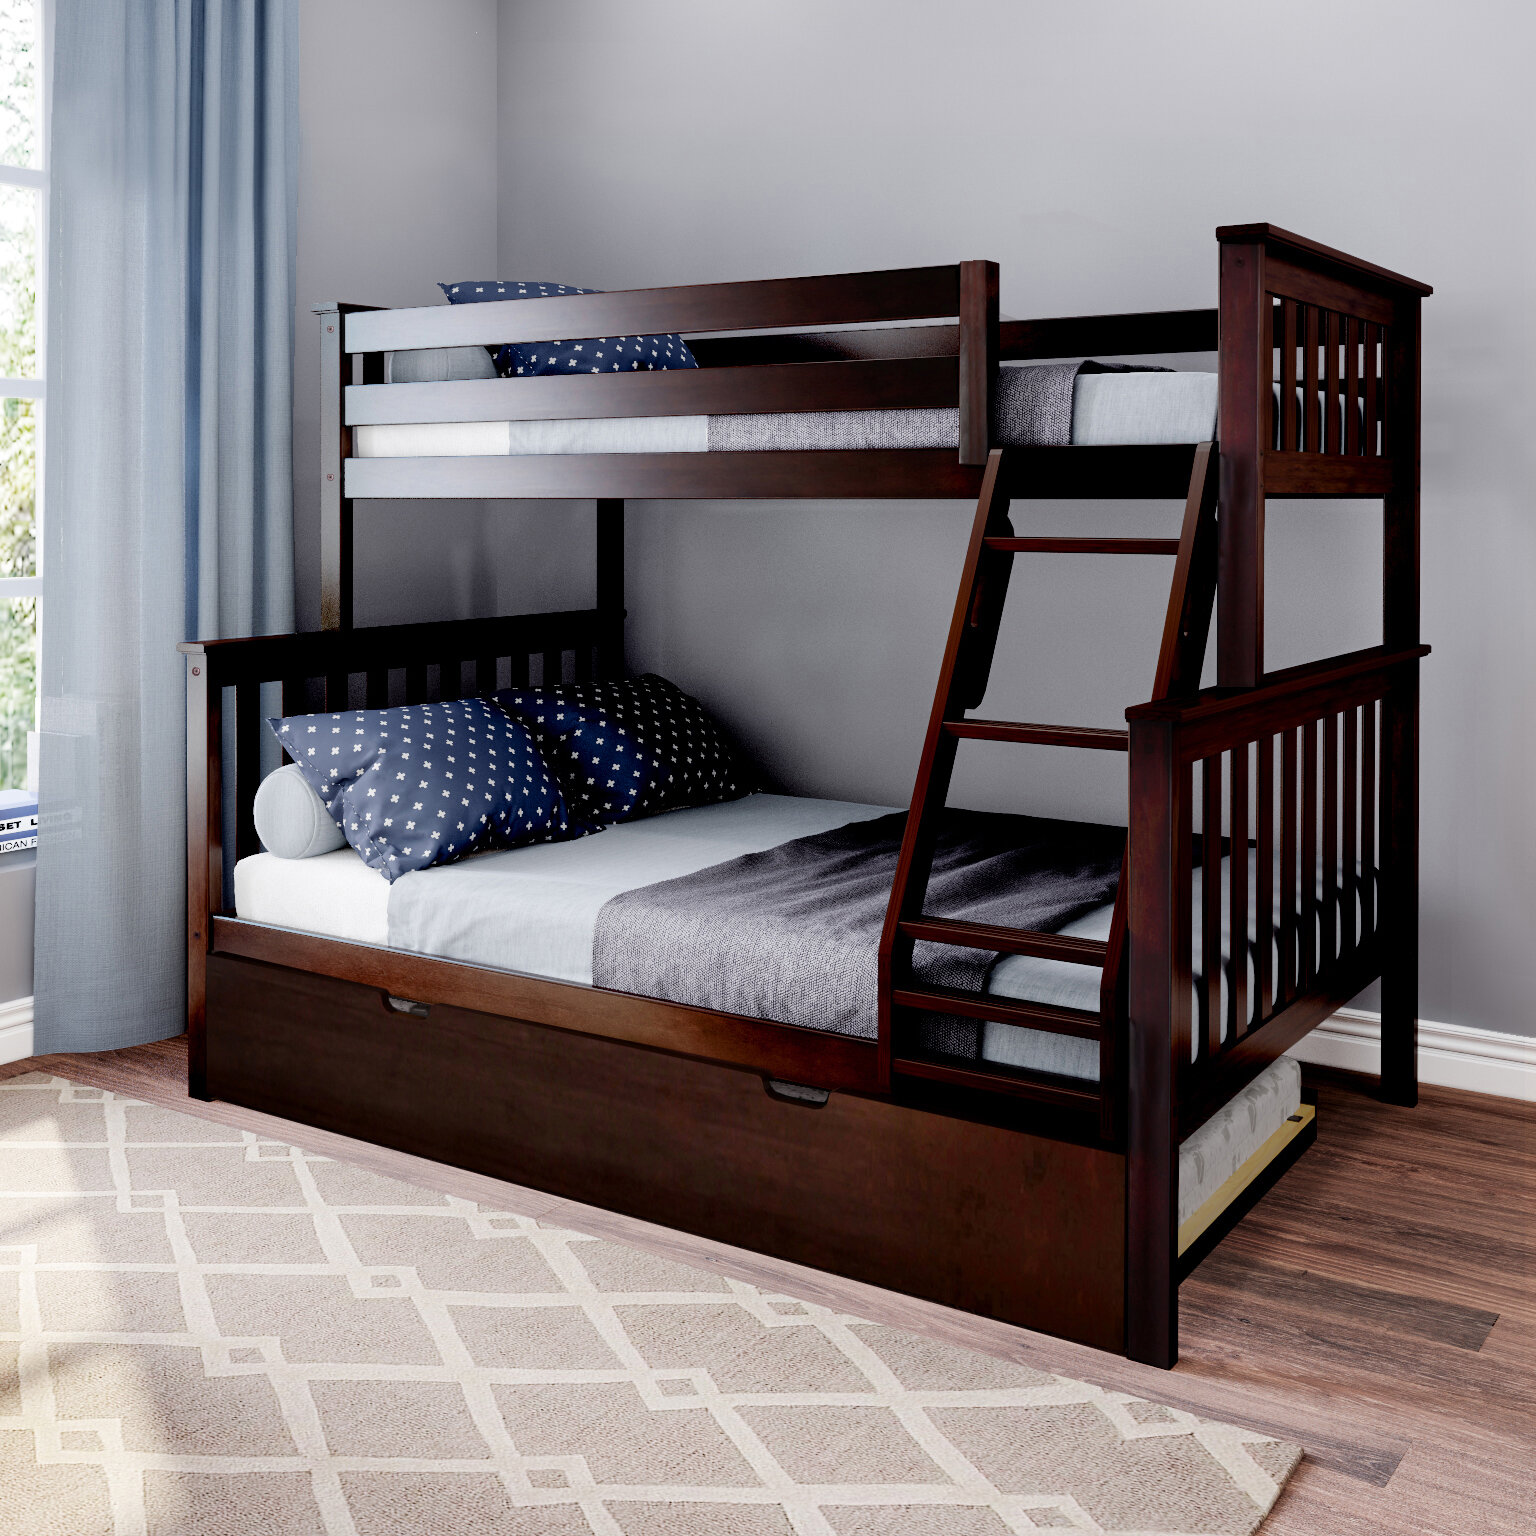 Metal Bunk Beds Twin over Full Size Ladder Kid Teen Dorm Loft Bedroom Furniture 